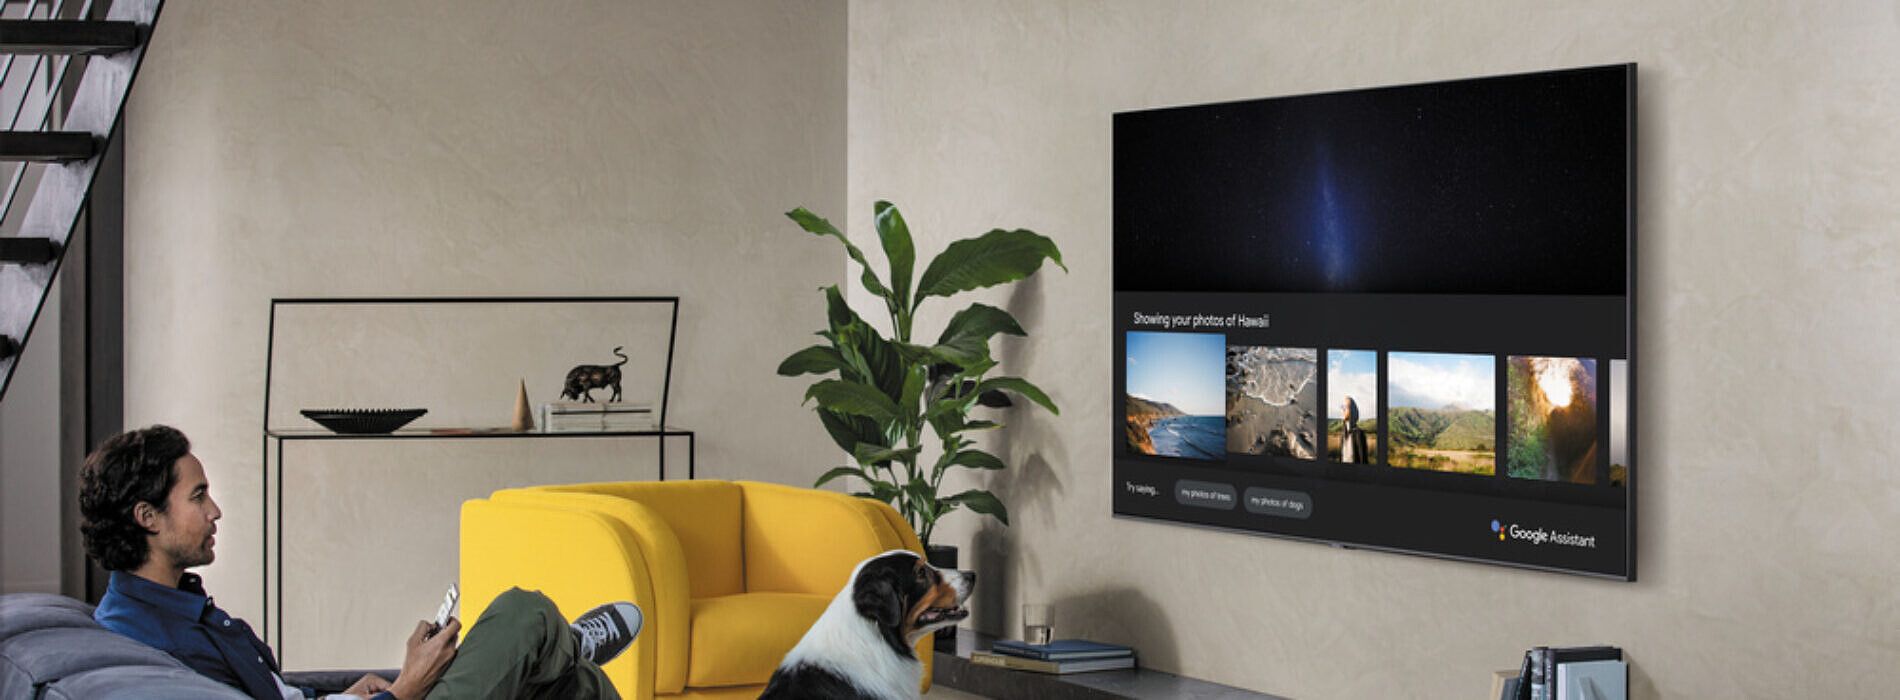 Samsung tv голосовое управление. Samsung Tizen 2020 телевизор. Samsung Tizen Home Assistant. Home Assistant Samsung TV. Модели ТВ самсунг с гугл ТВ.